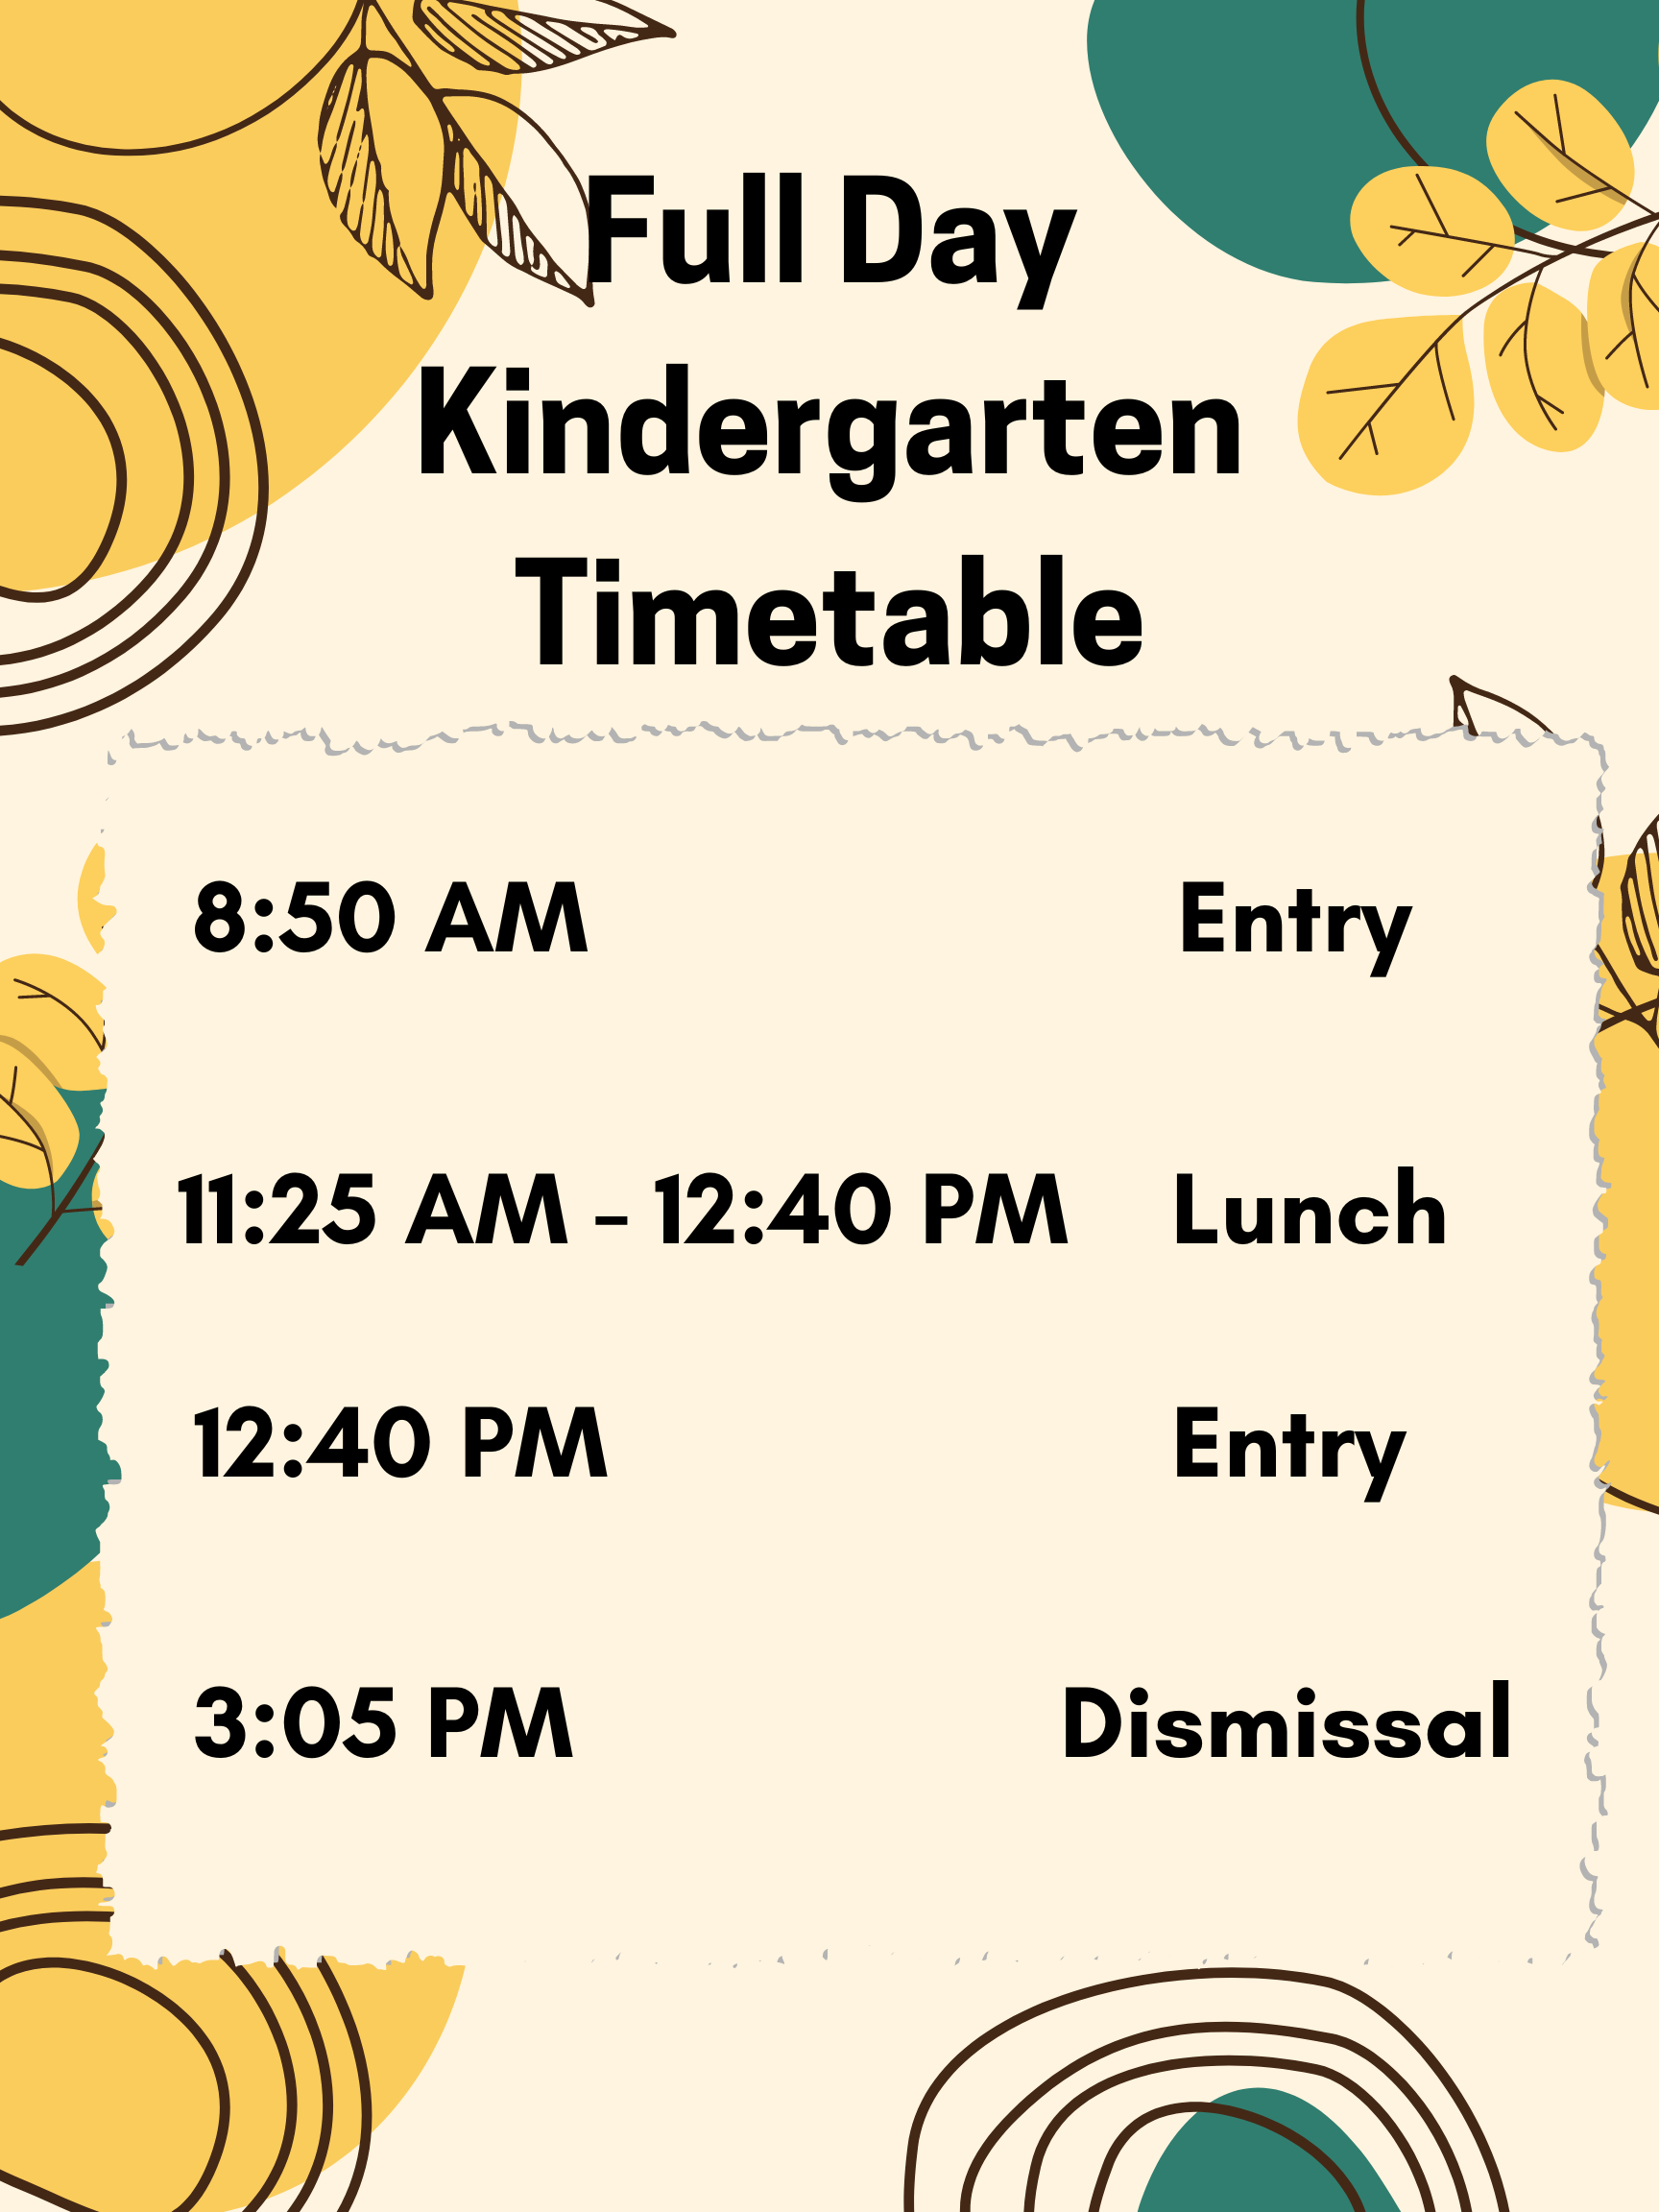 Full Day Kindergarten Timetable